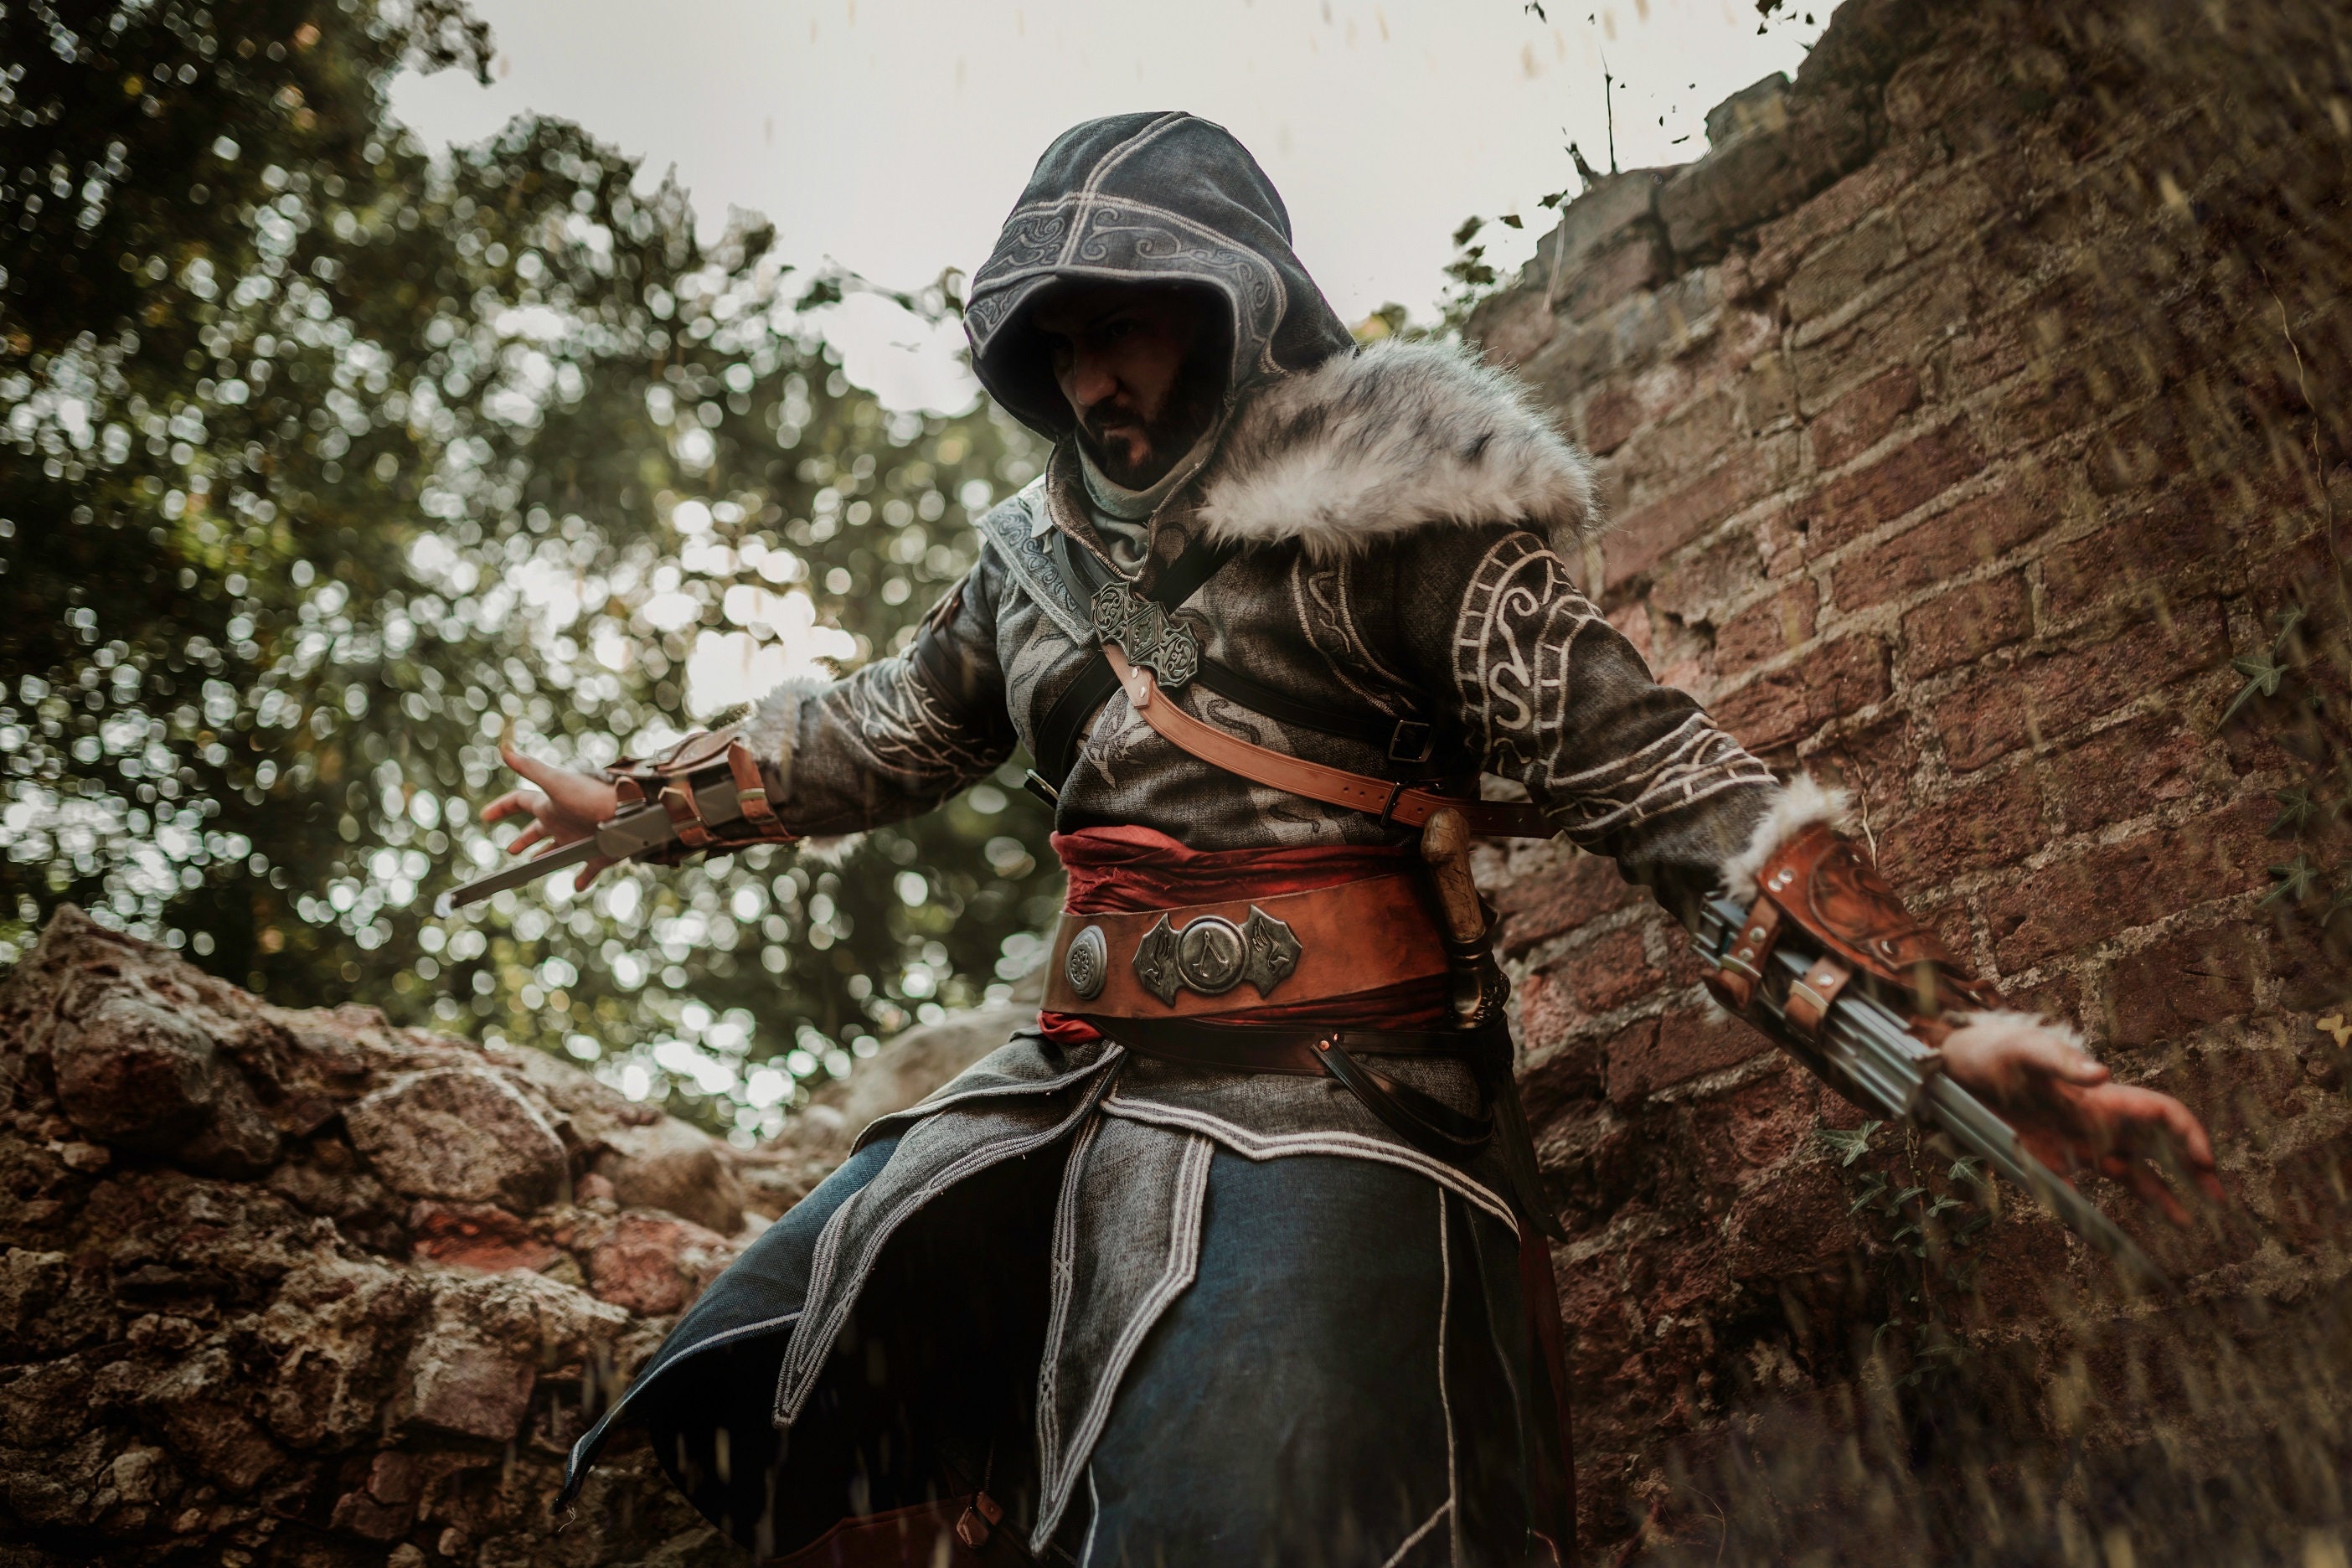 Chibi Ezio Auditore! *^___^* Assassin's Creed costume made…